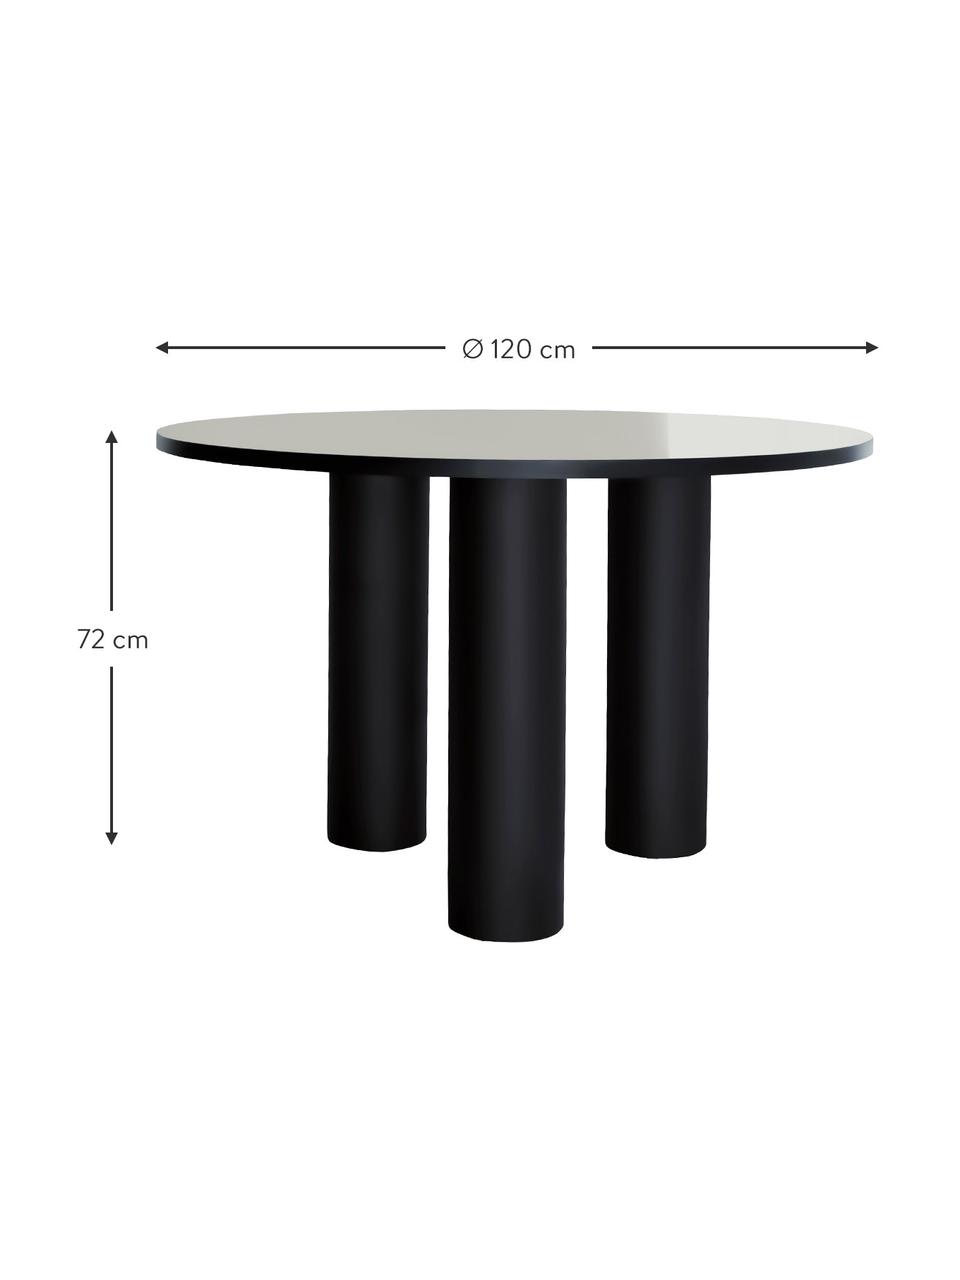 Kulatý jídelní stůl Colette, Ø 120 cm, MDF deska (dřevovláknitá deska střední hustoty) s lakovanou dýhou z ořechového dřeva, certifikace FSC, Černá, Ø 120 cm, V 72 cm